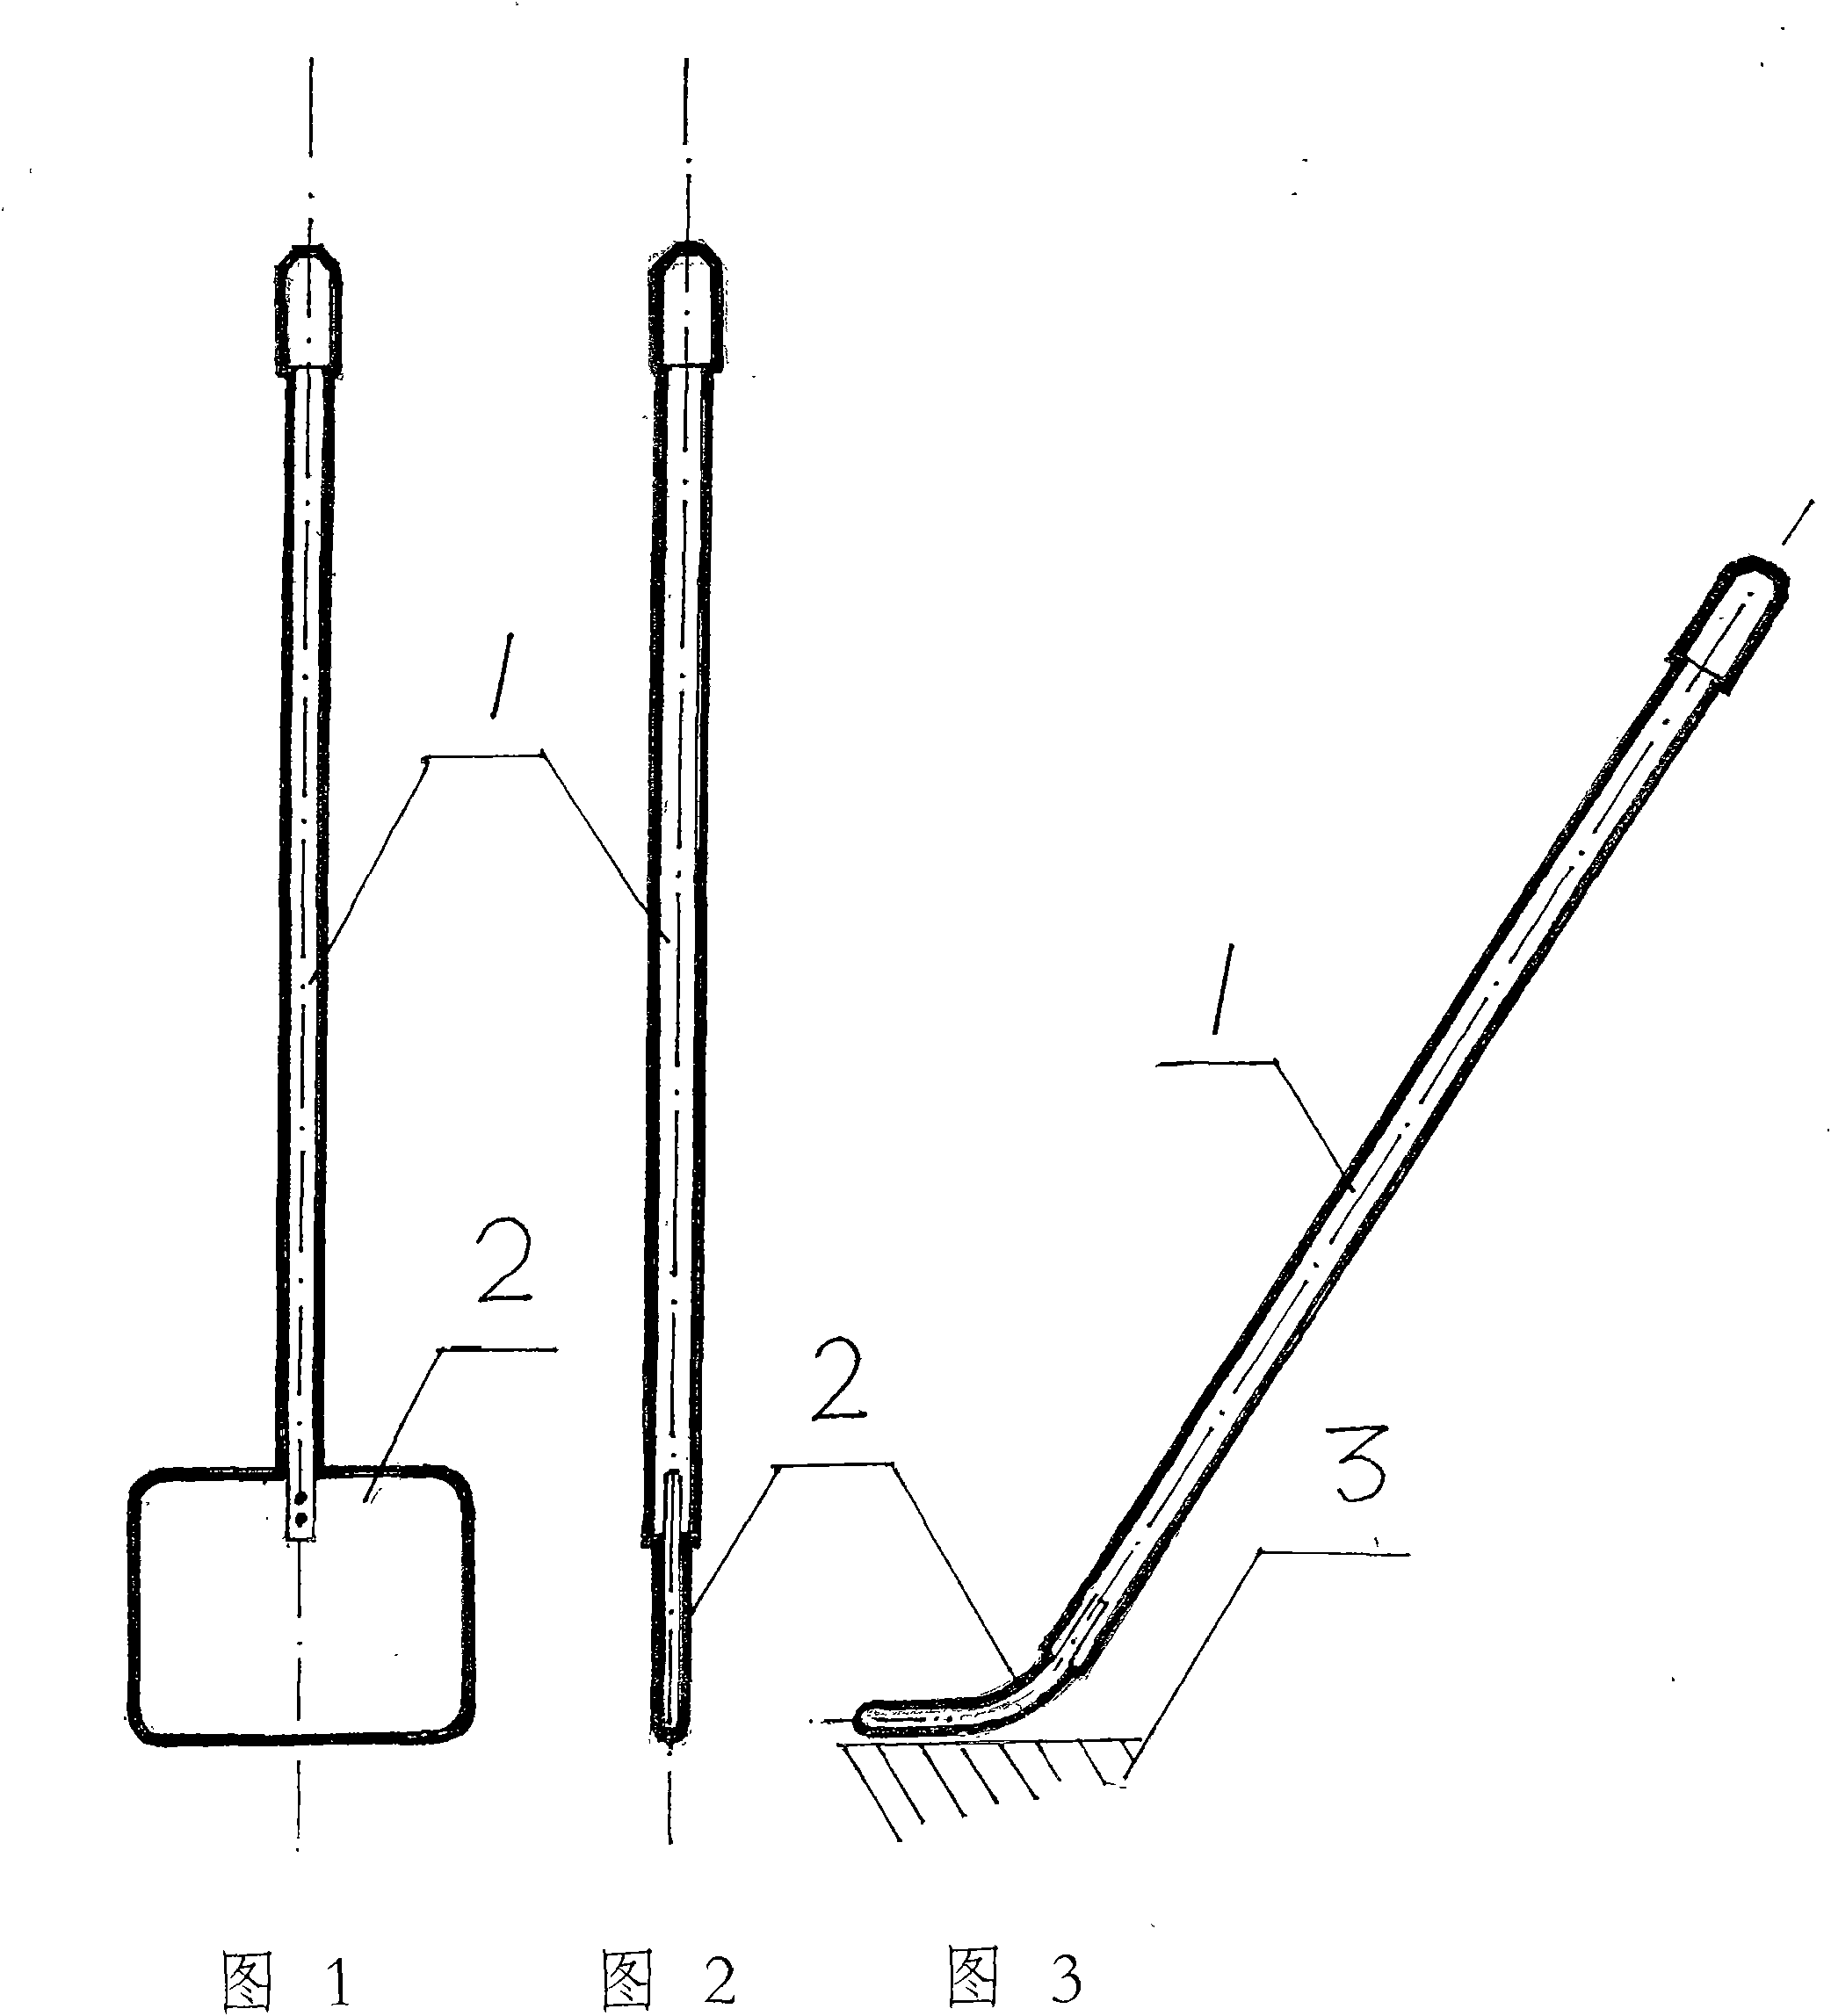 Portable mop and assorted mop barrel